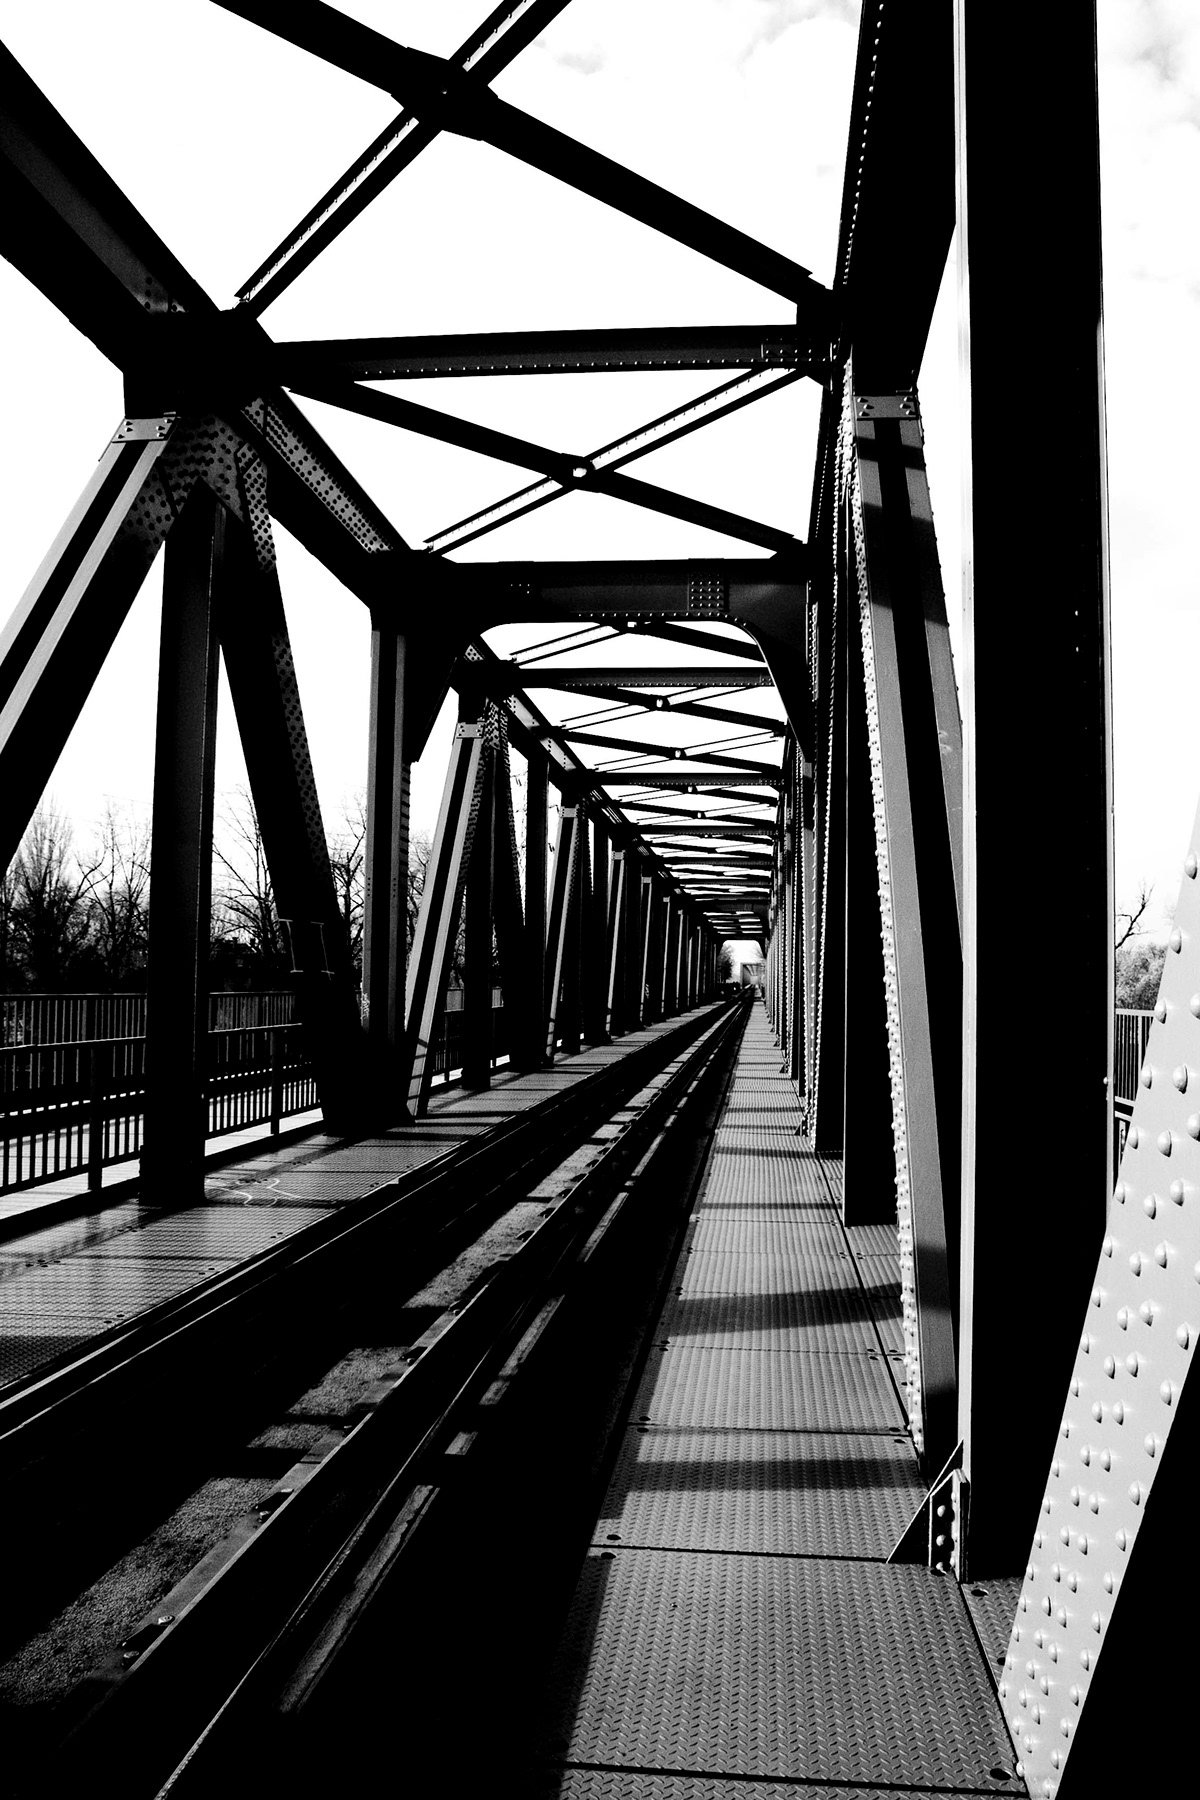 magány solitude photo bridge